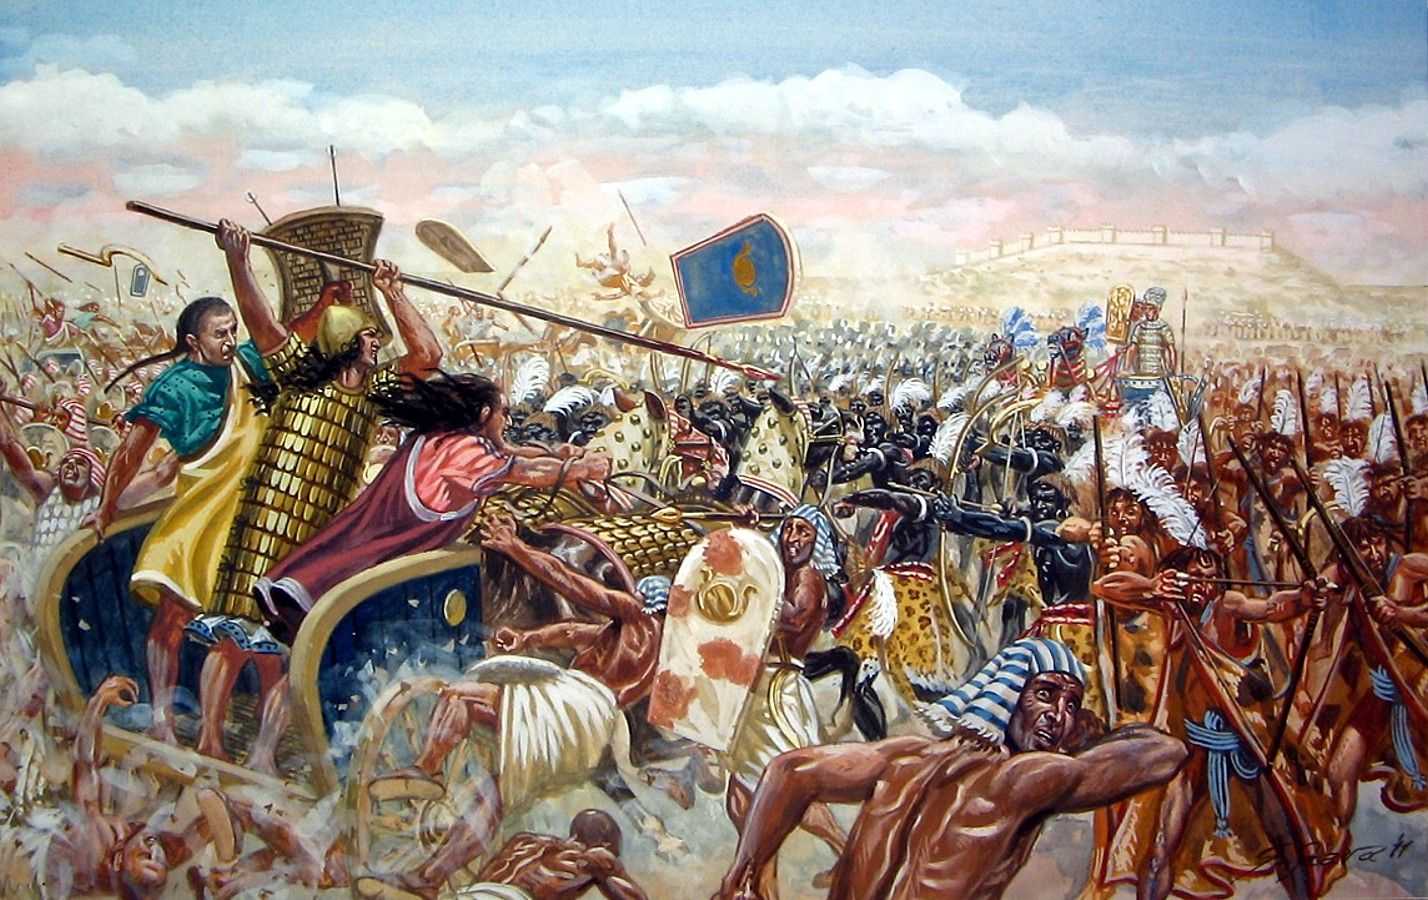 Греко-персидские войны